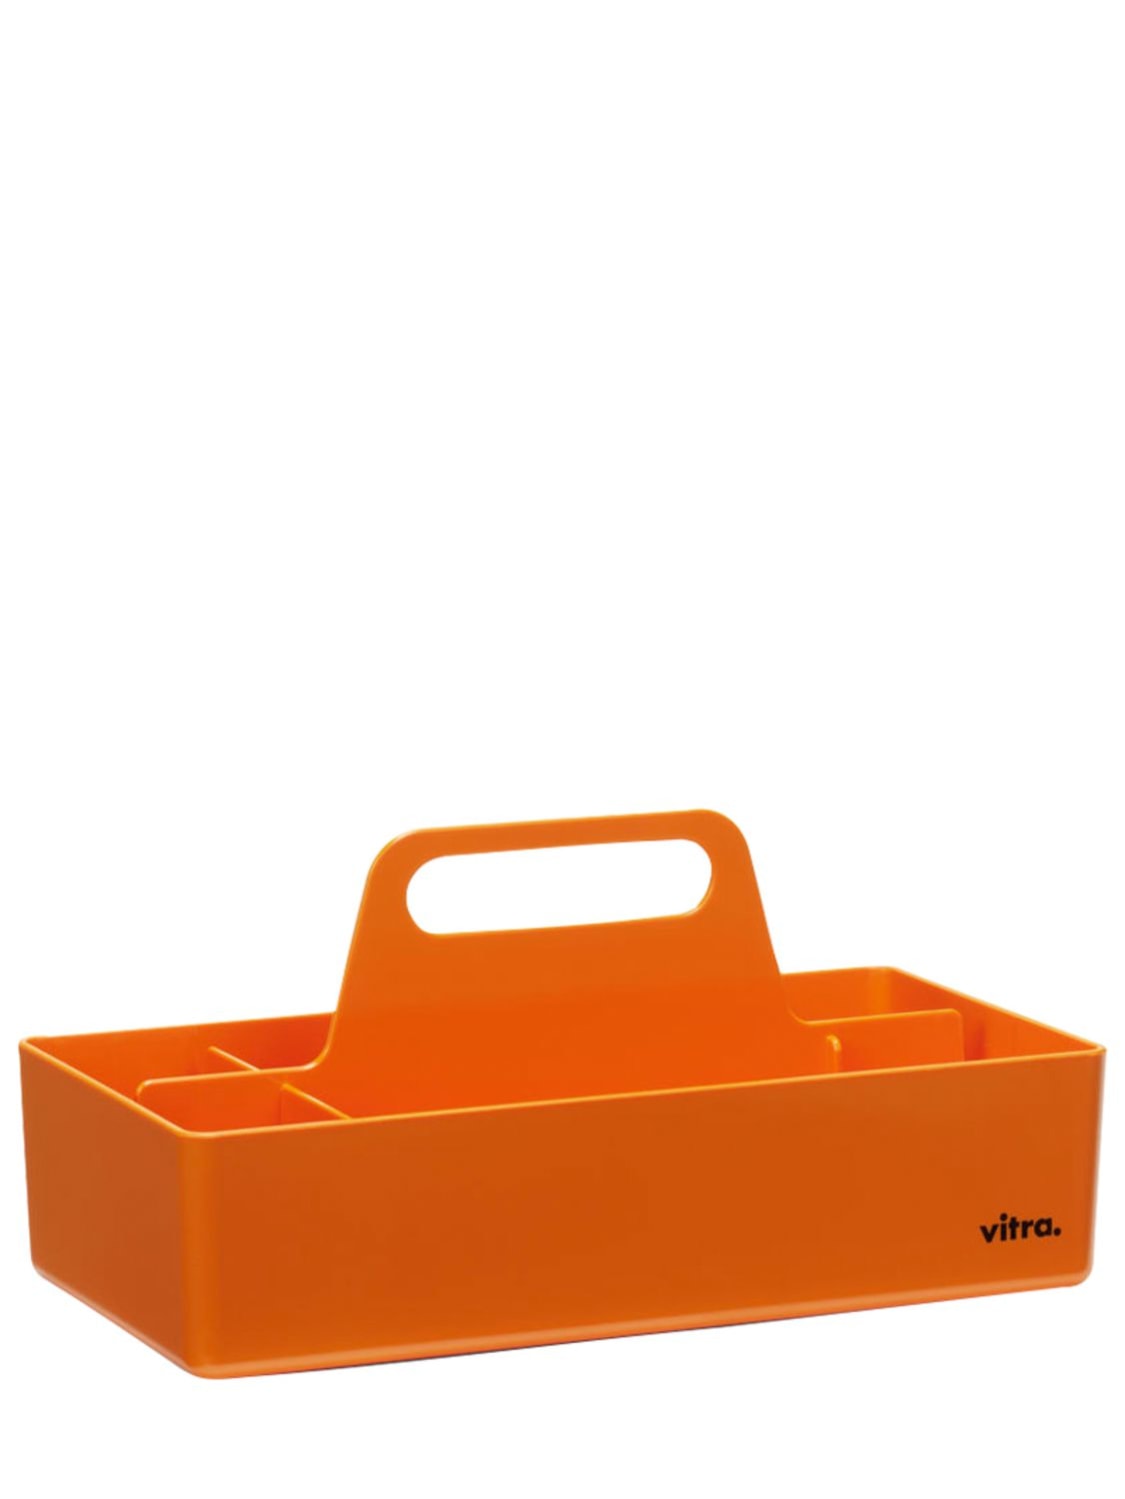 Vitra Toolbox In Orange